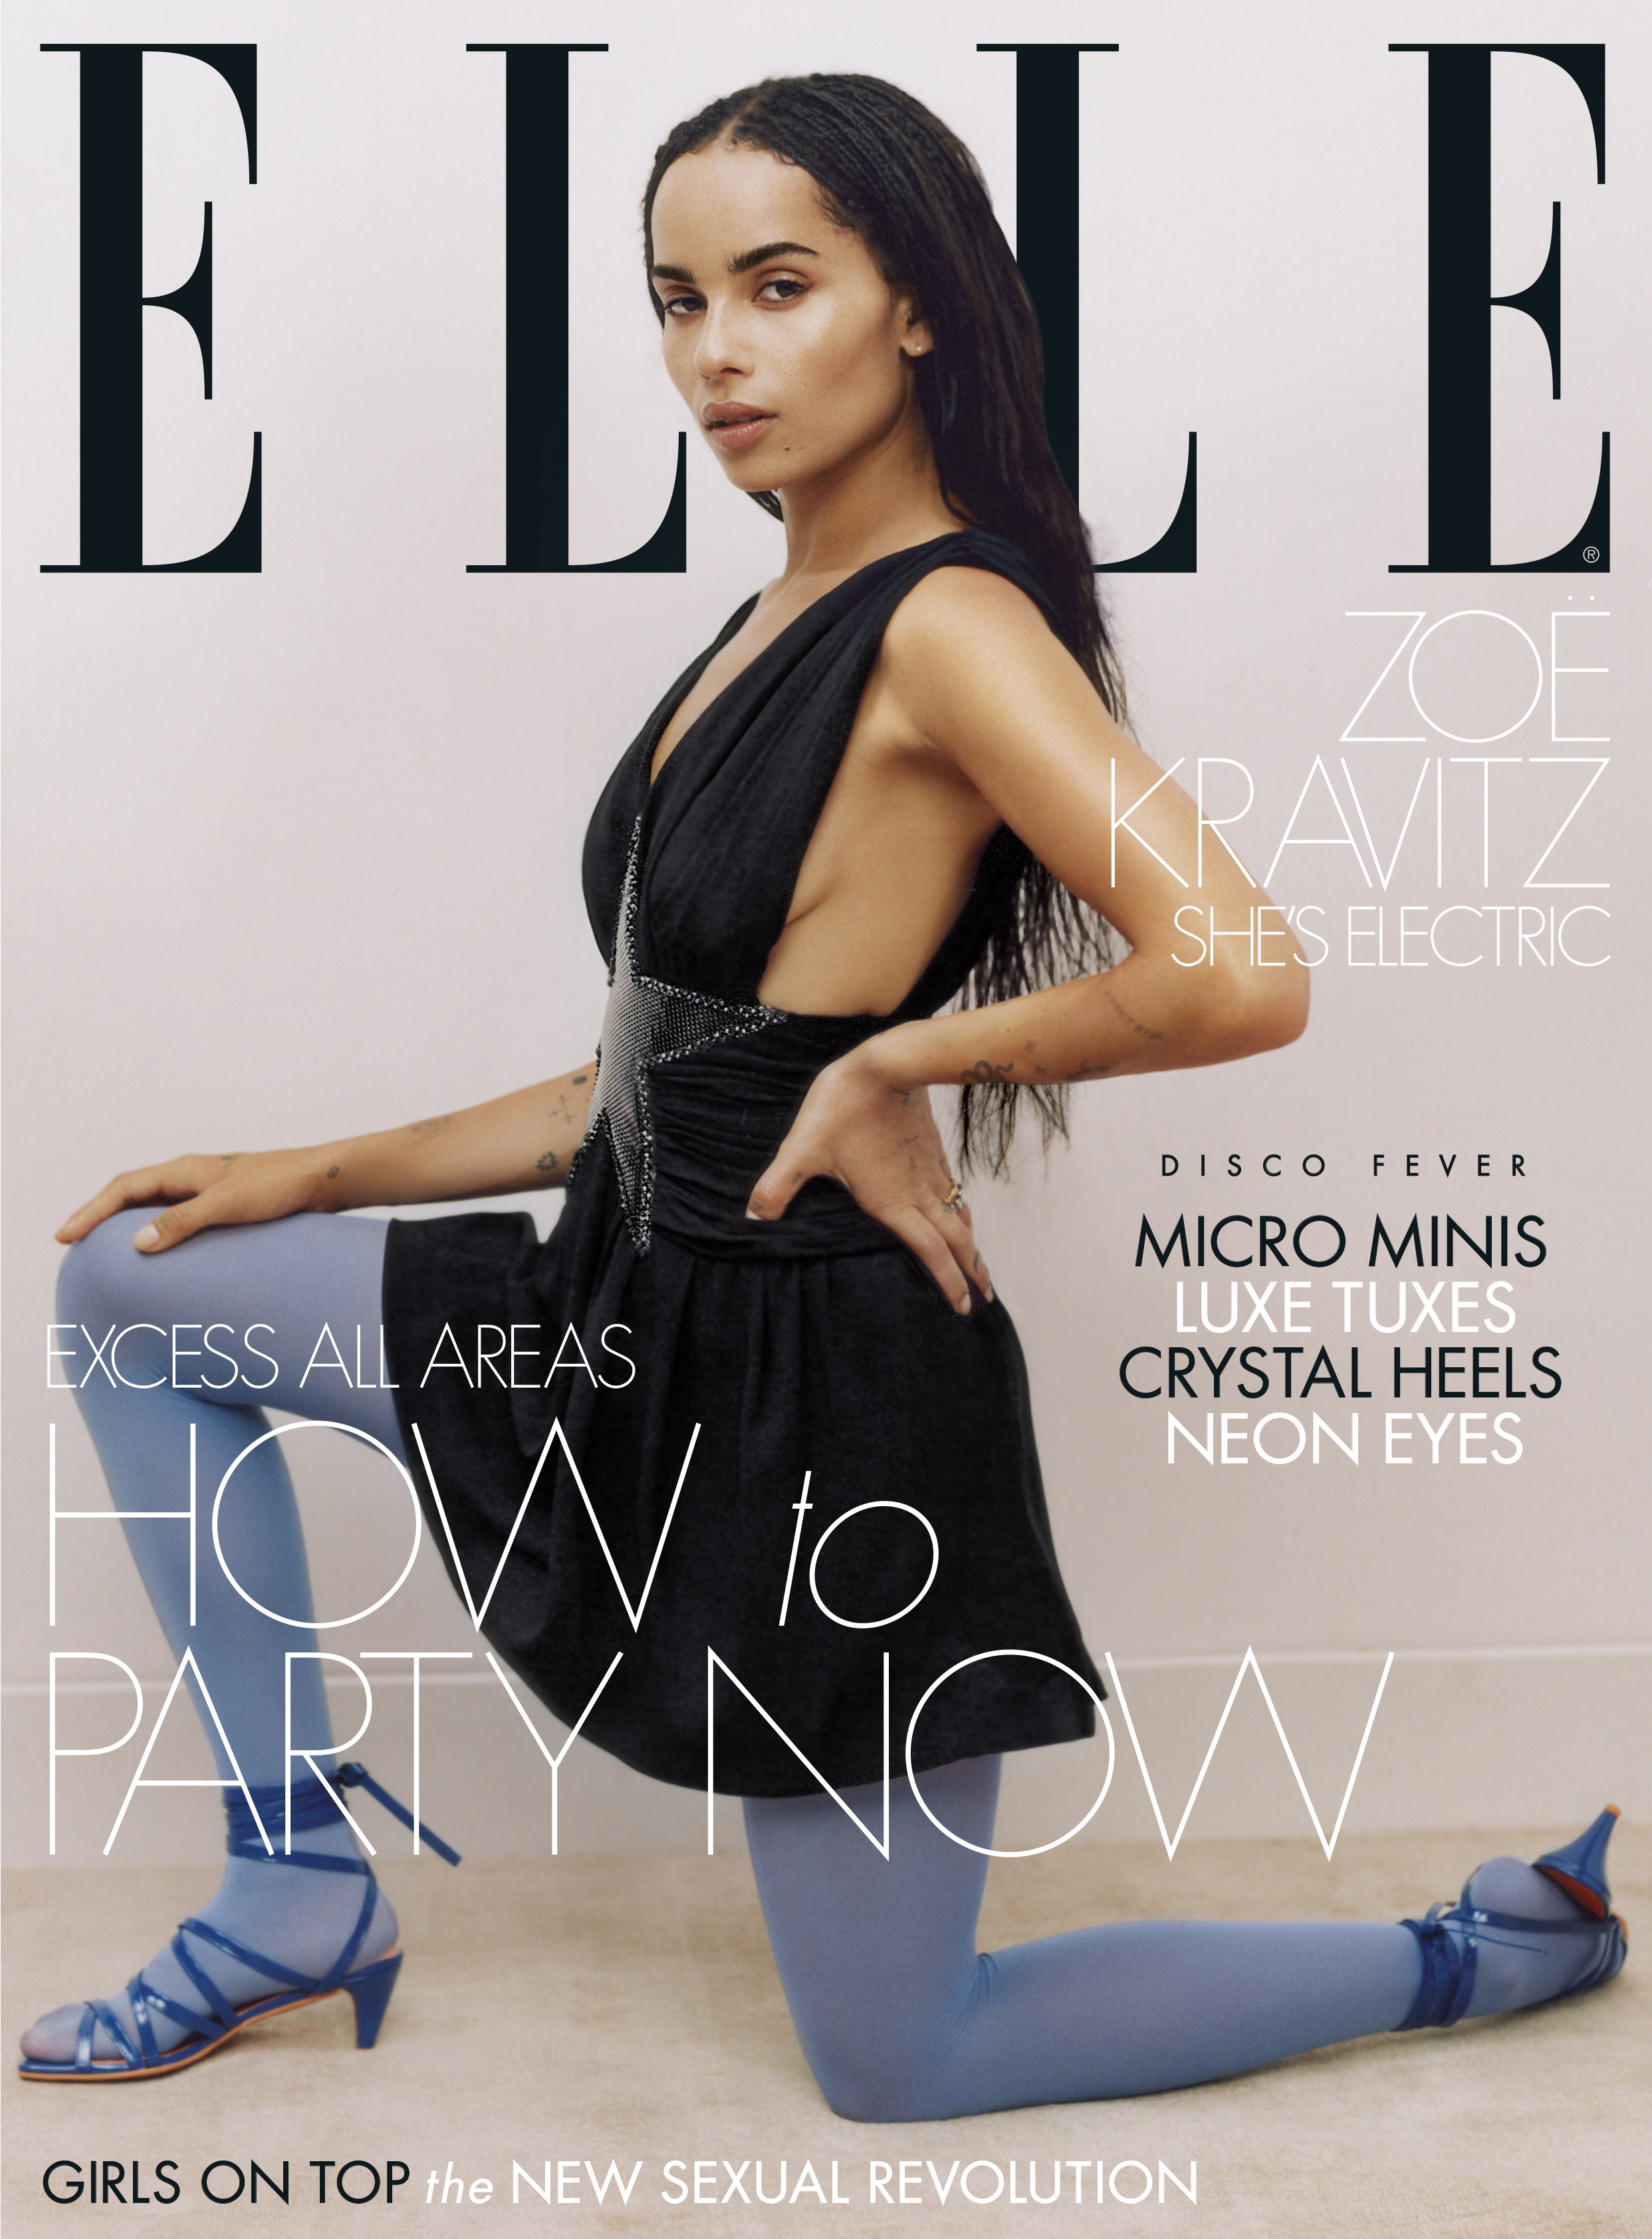 Zoe Kravitz on the cover of Elle